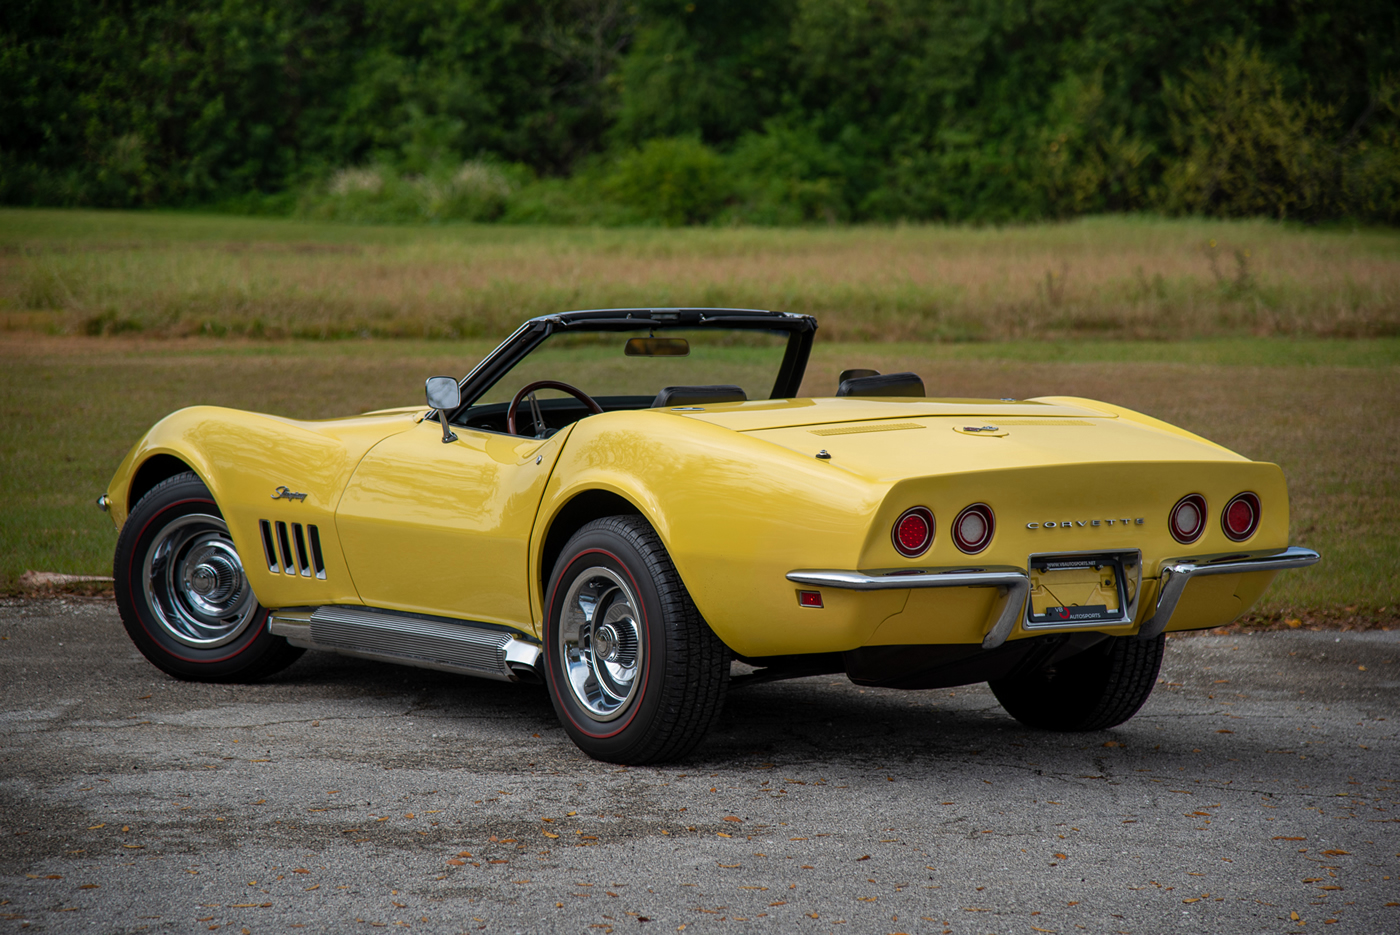 1969 Corvette Convertible in Daytona Yellow